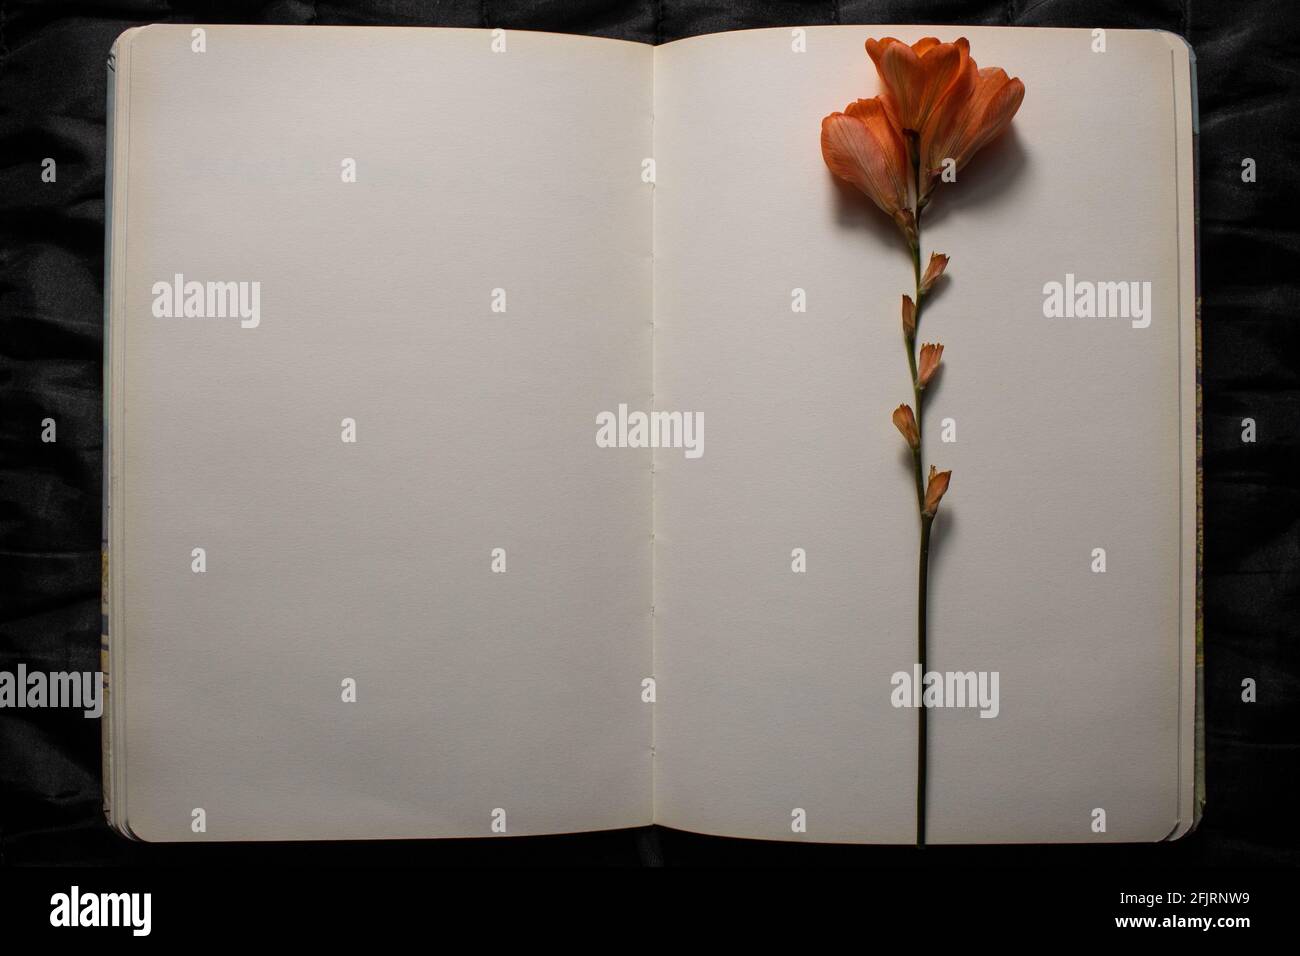 Vue de dessus du livre ouvert avec fleur de freesia orange reposant sur le dessus des pages vierges vides sur un fond noir texturé. Espace vide pour le texte Banque D'Images